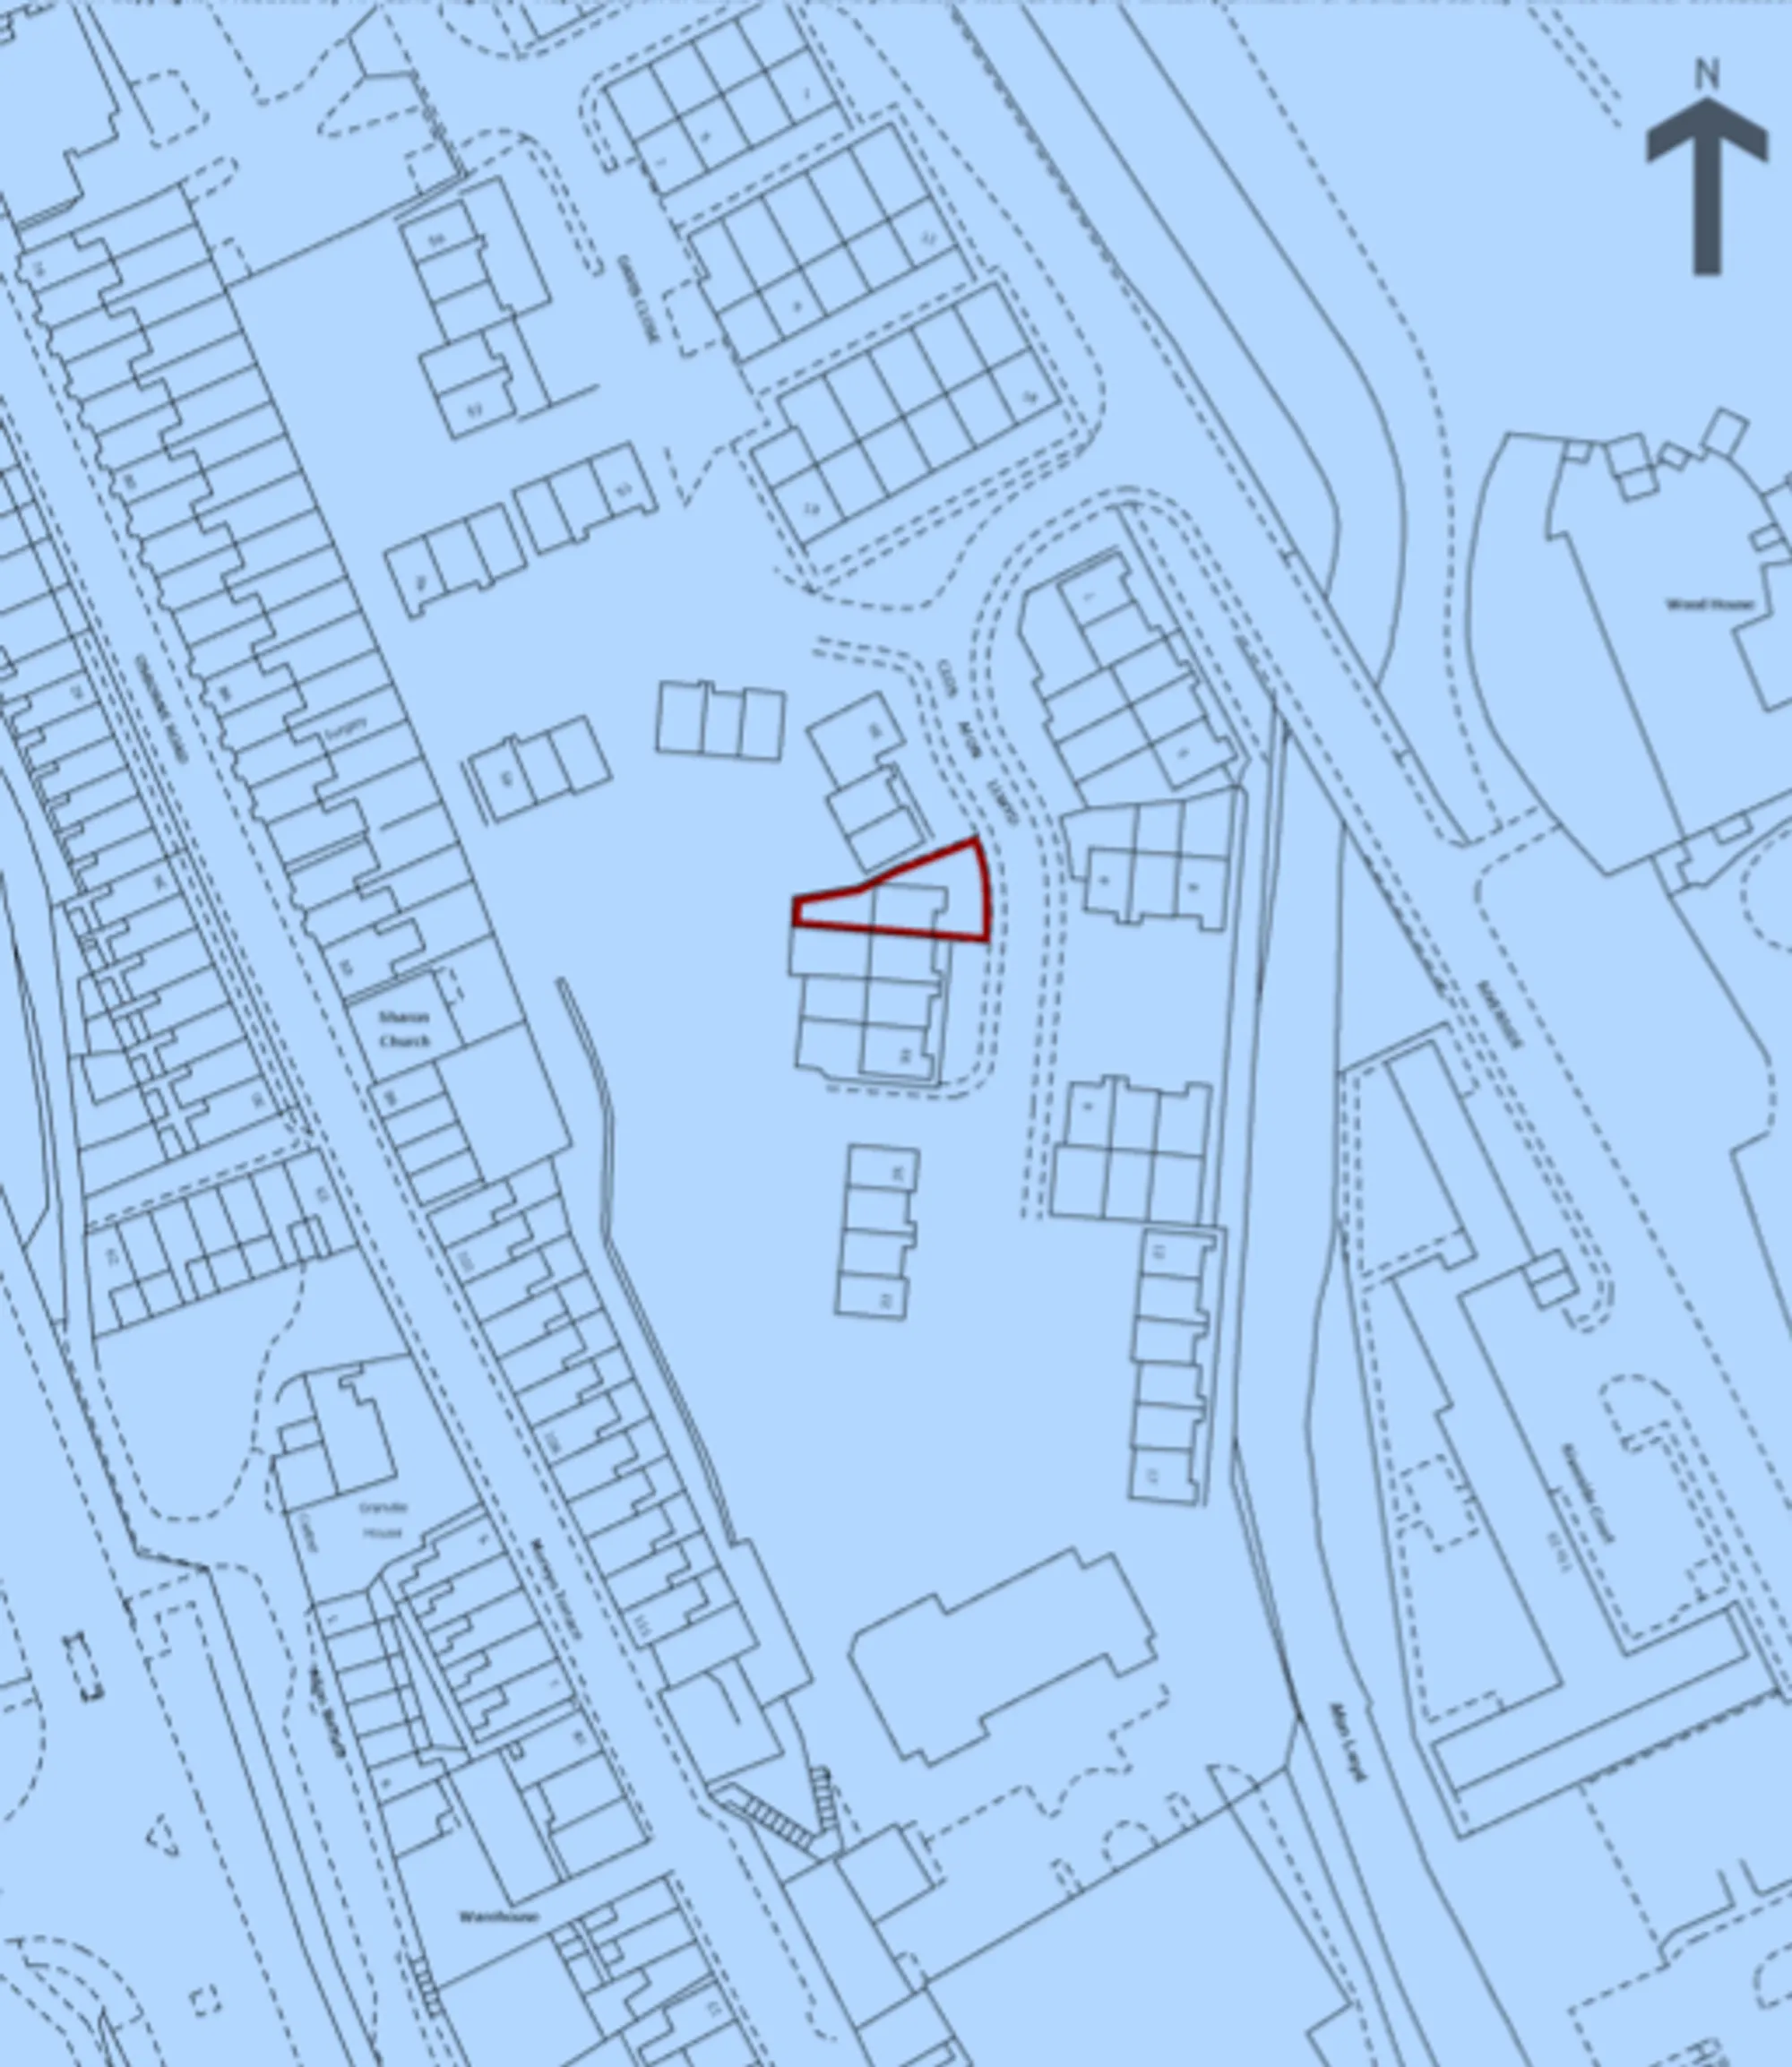 4 bed semi-detached house for sale in Clos Afon Llwyd, Pontypool - Property Floorplan